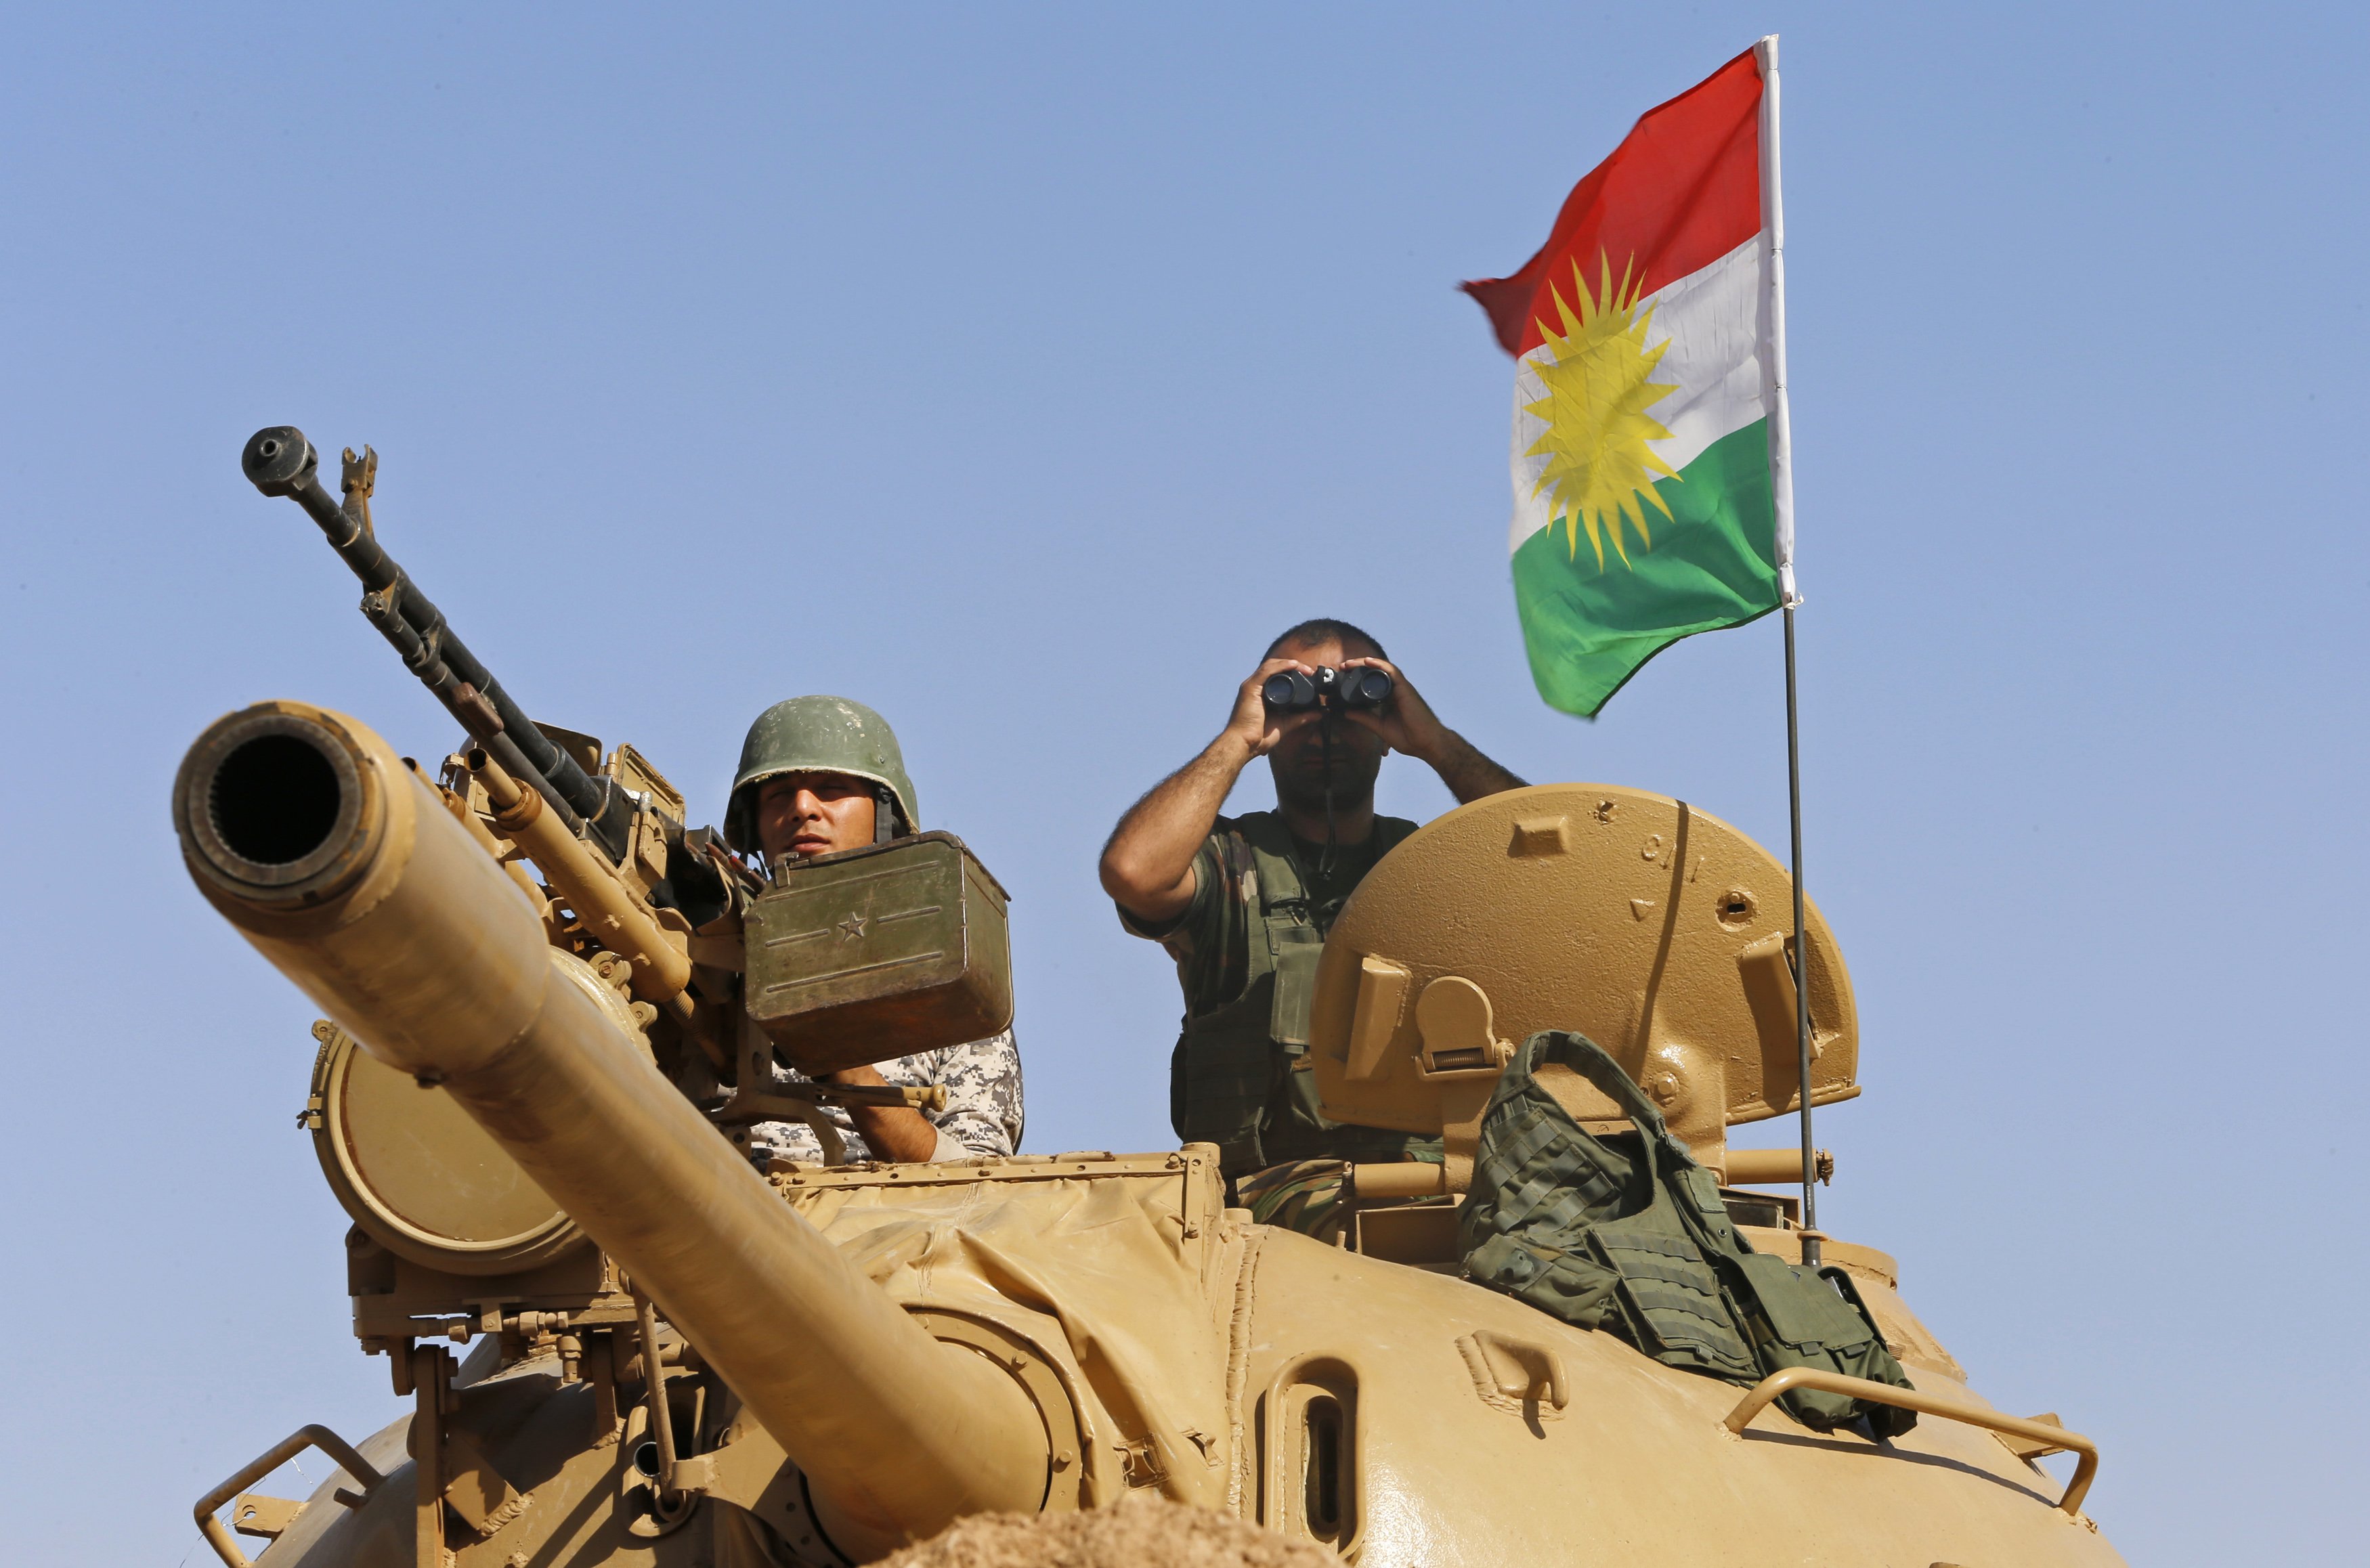 ¿Quiénes son los kurdos y por qué están siendo atacados?